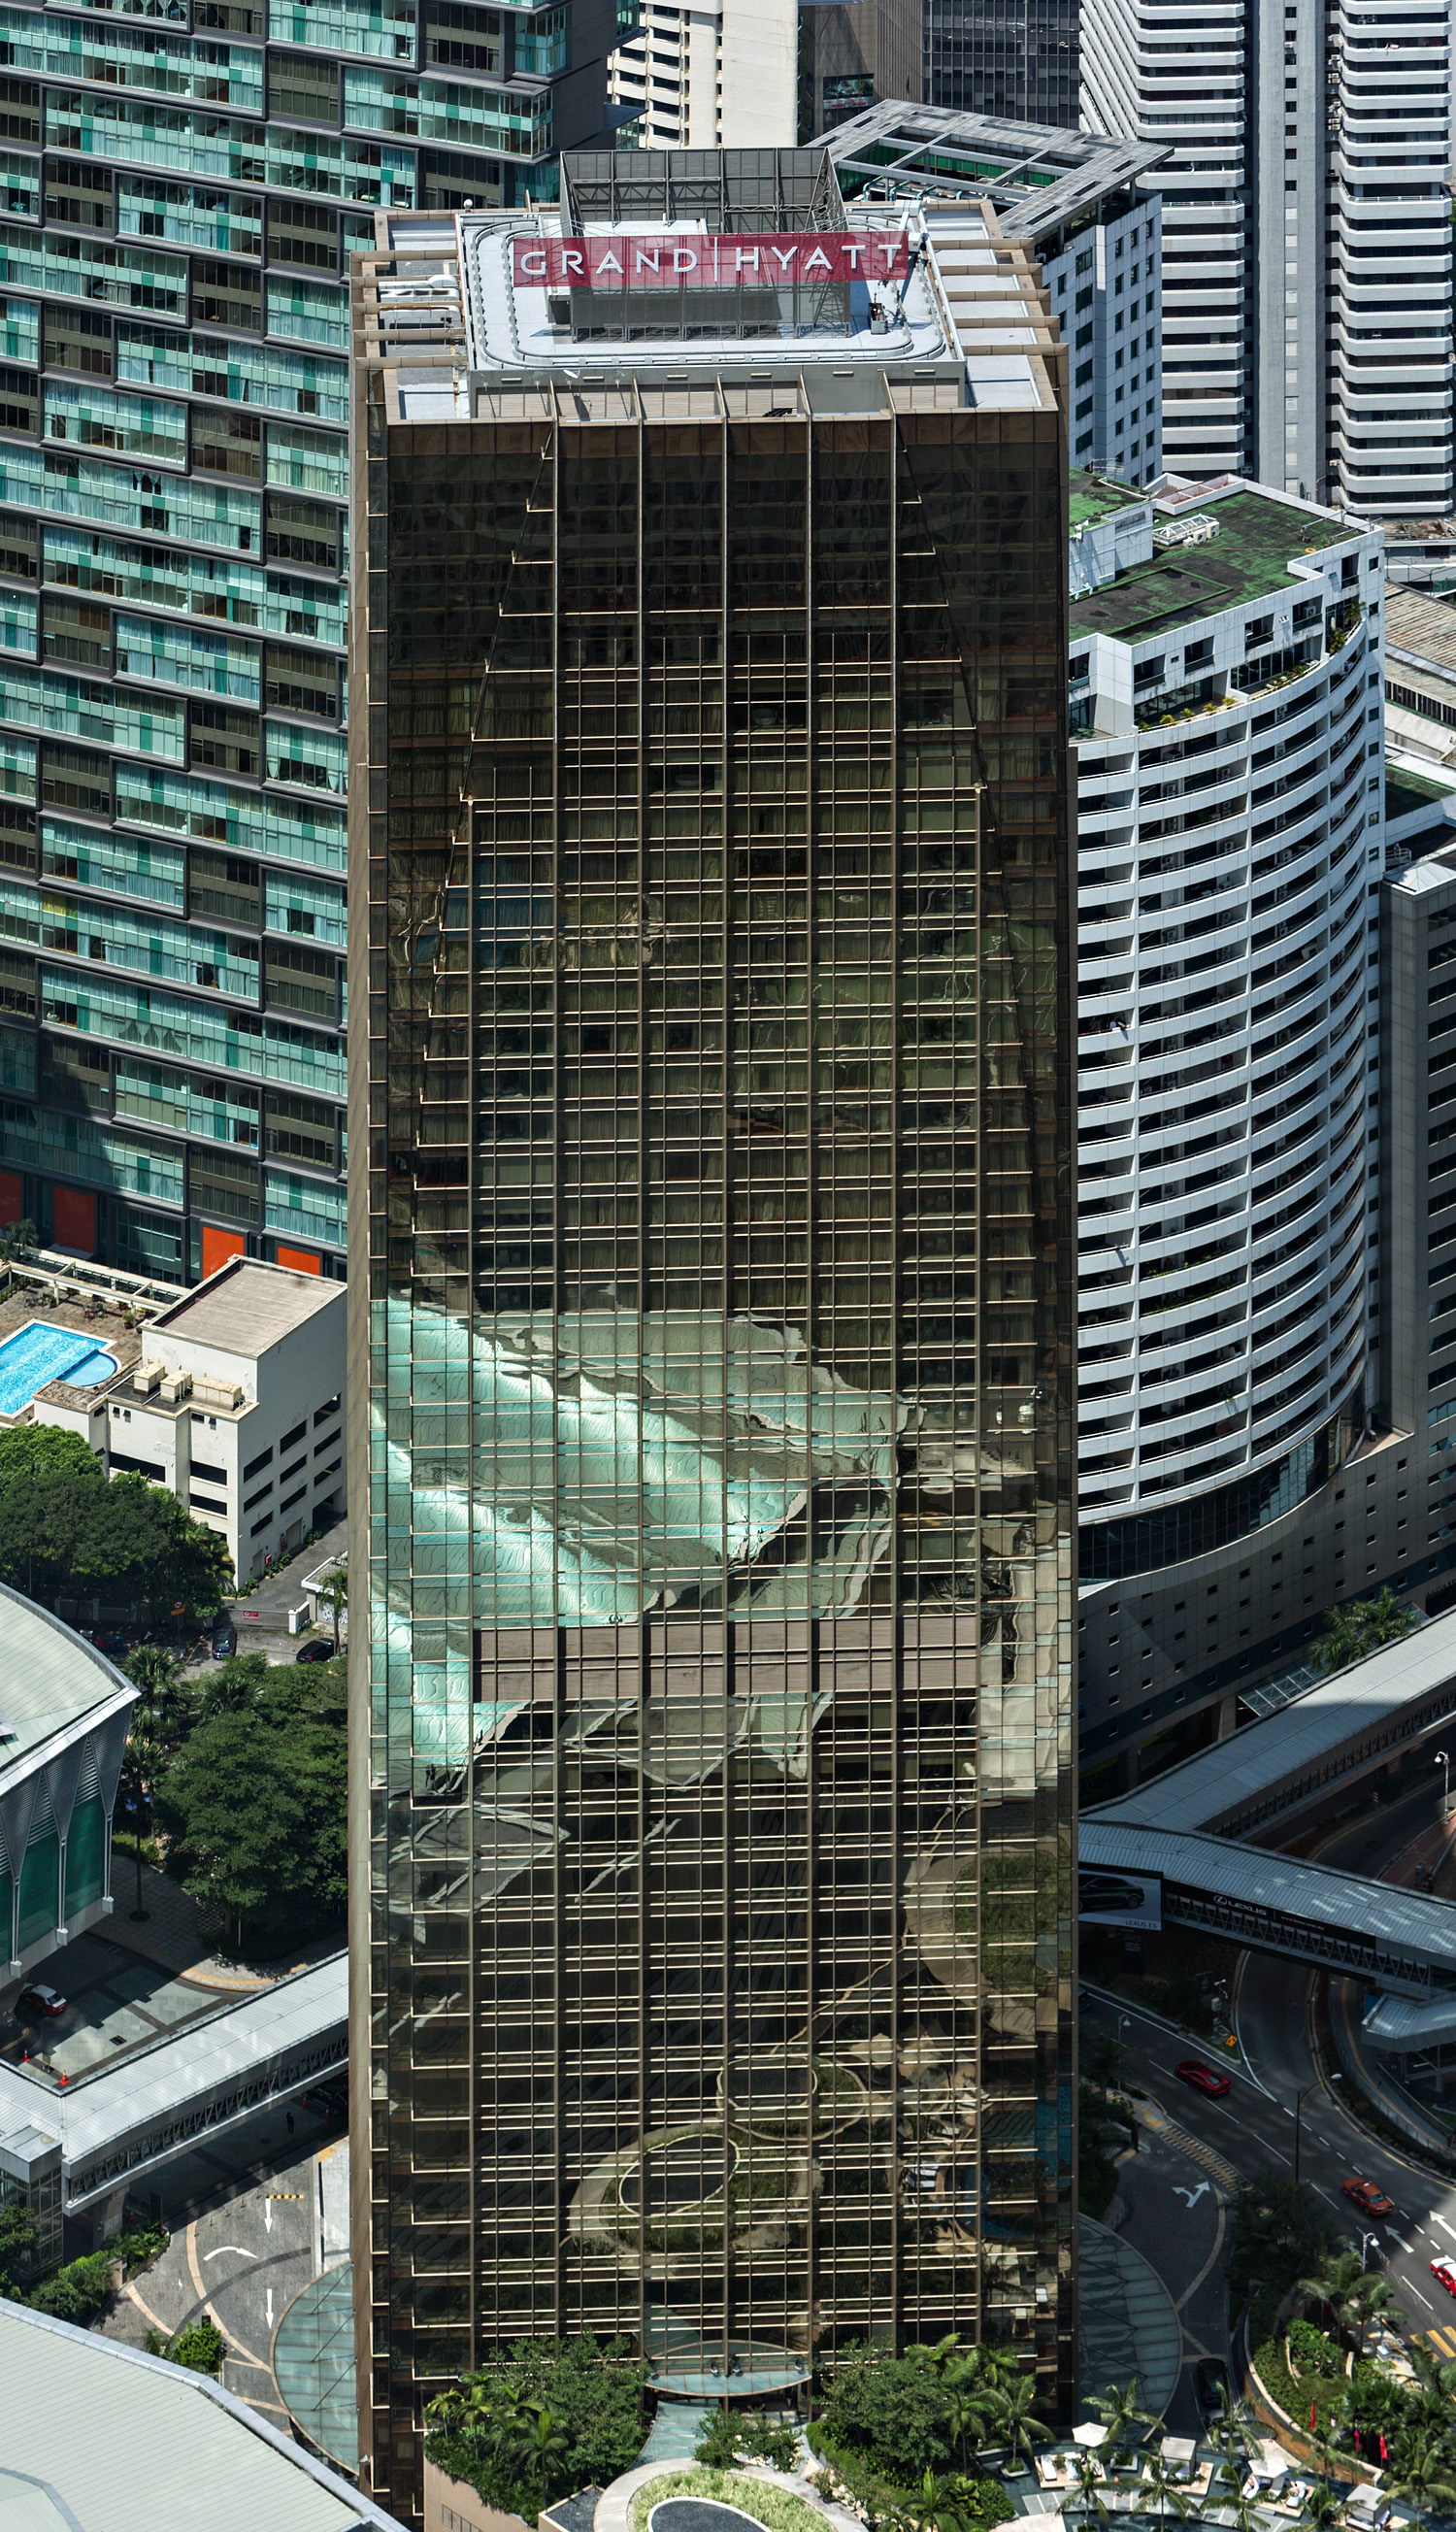 Grand Hyatt Hotel - View from Petronas Tower 2 